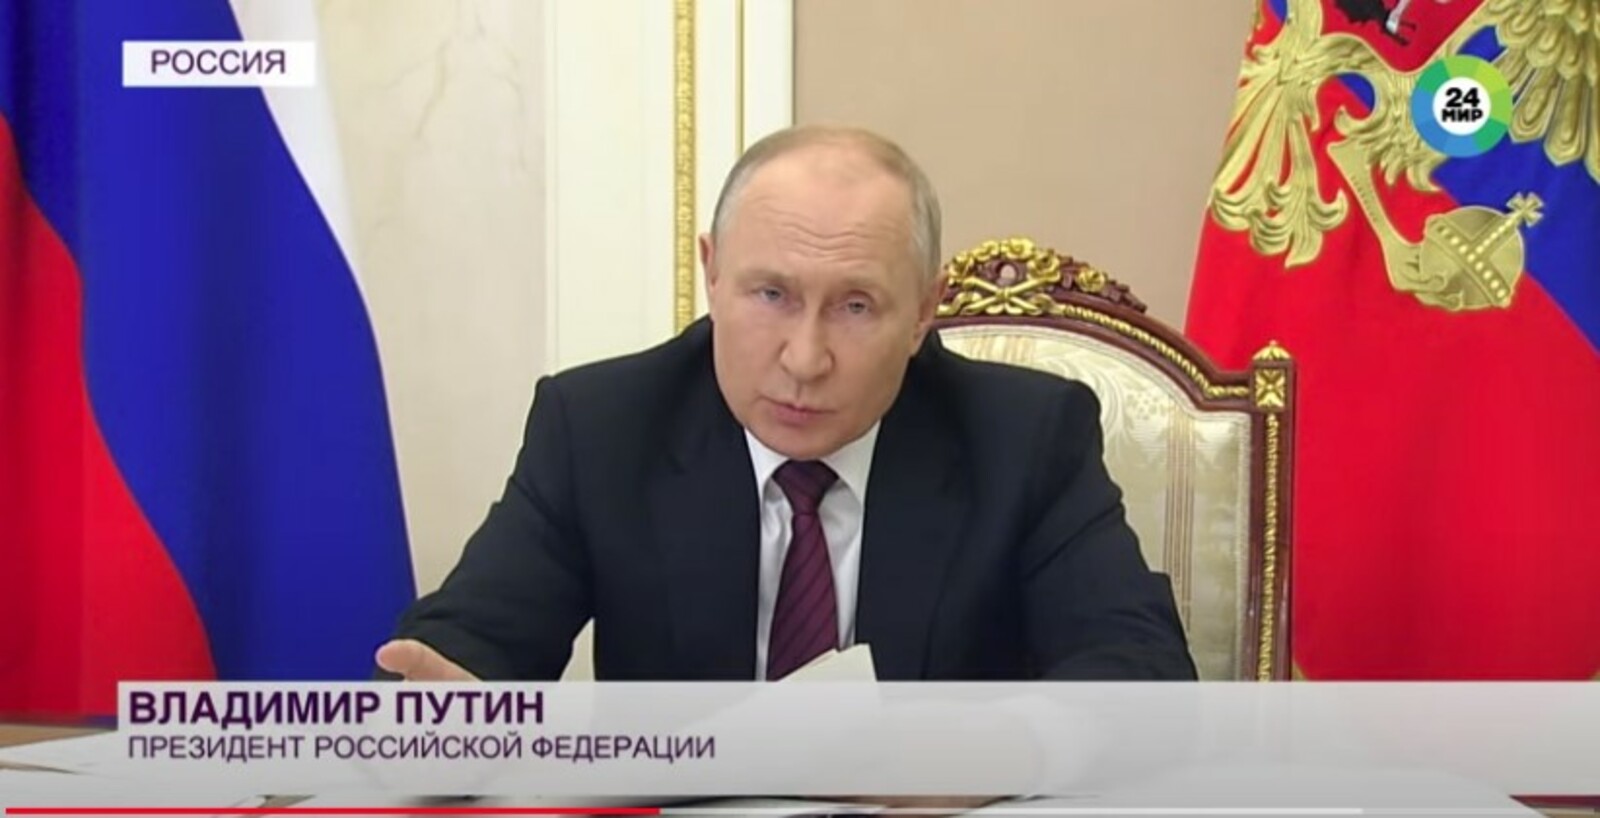 Путин: МРОТ будет повышен на 18,5%